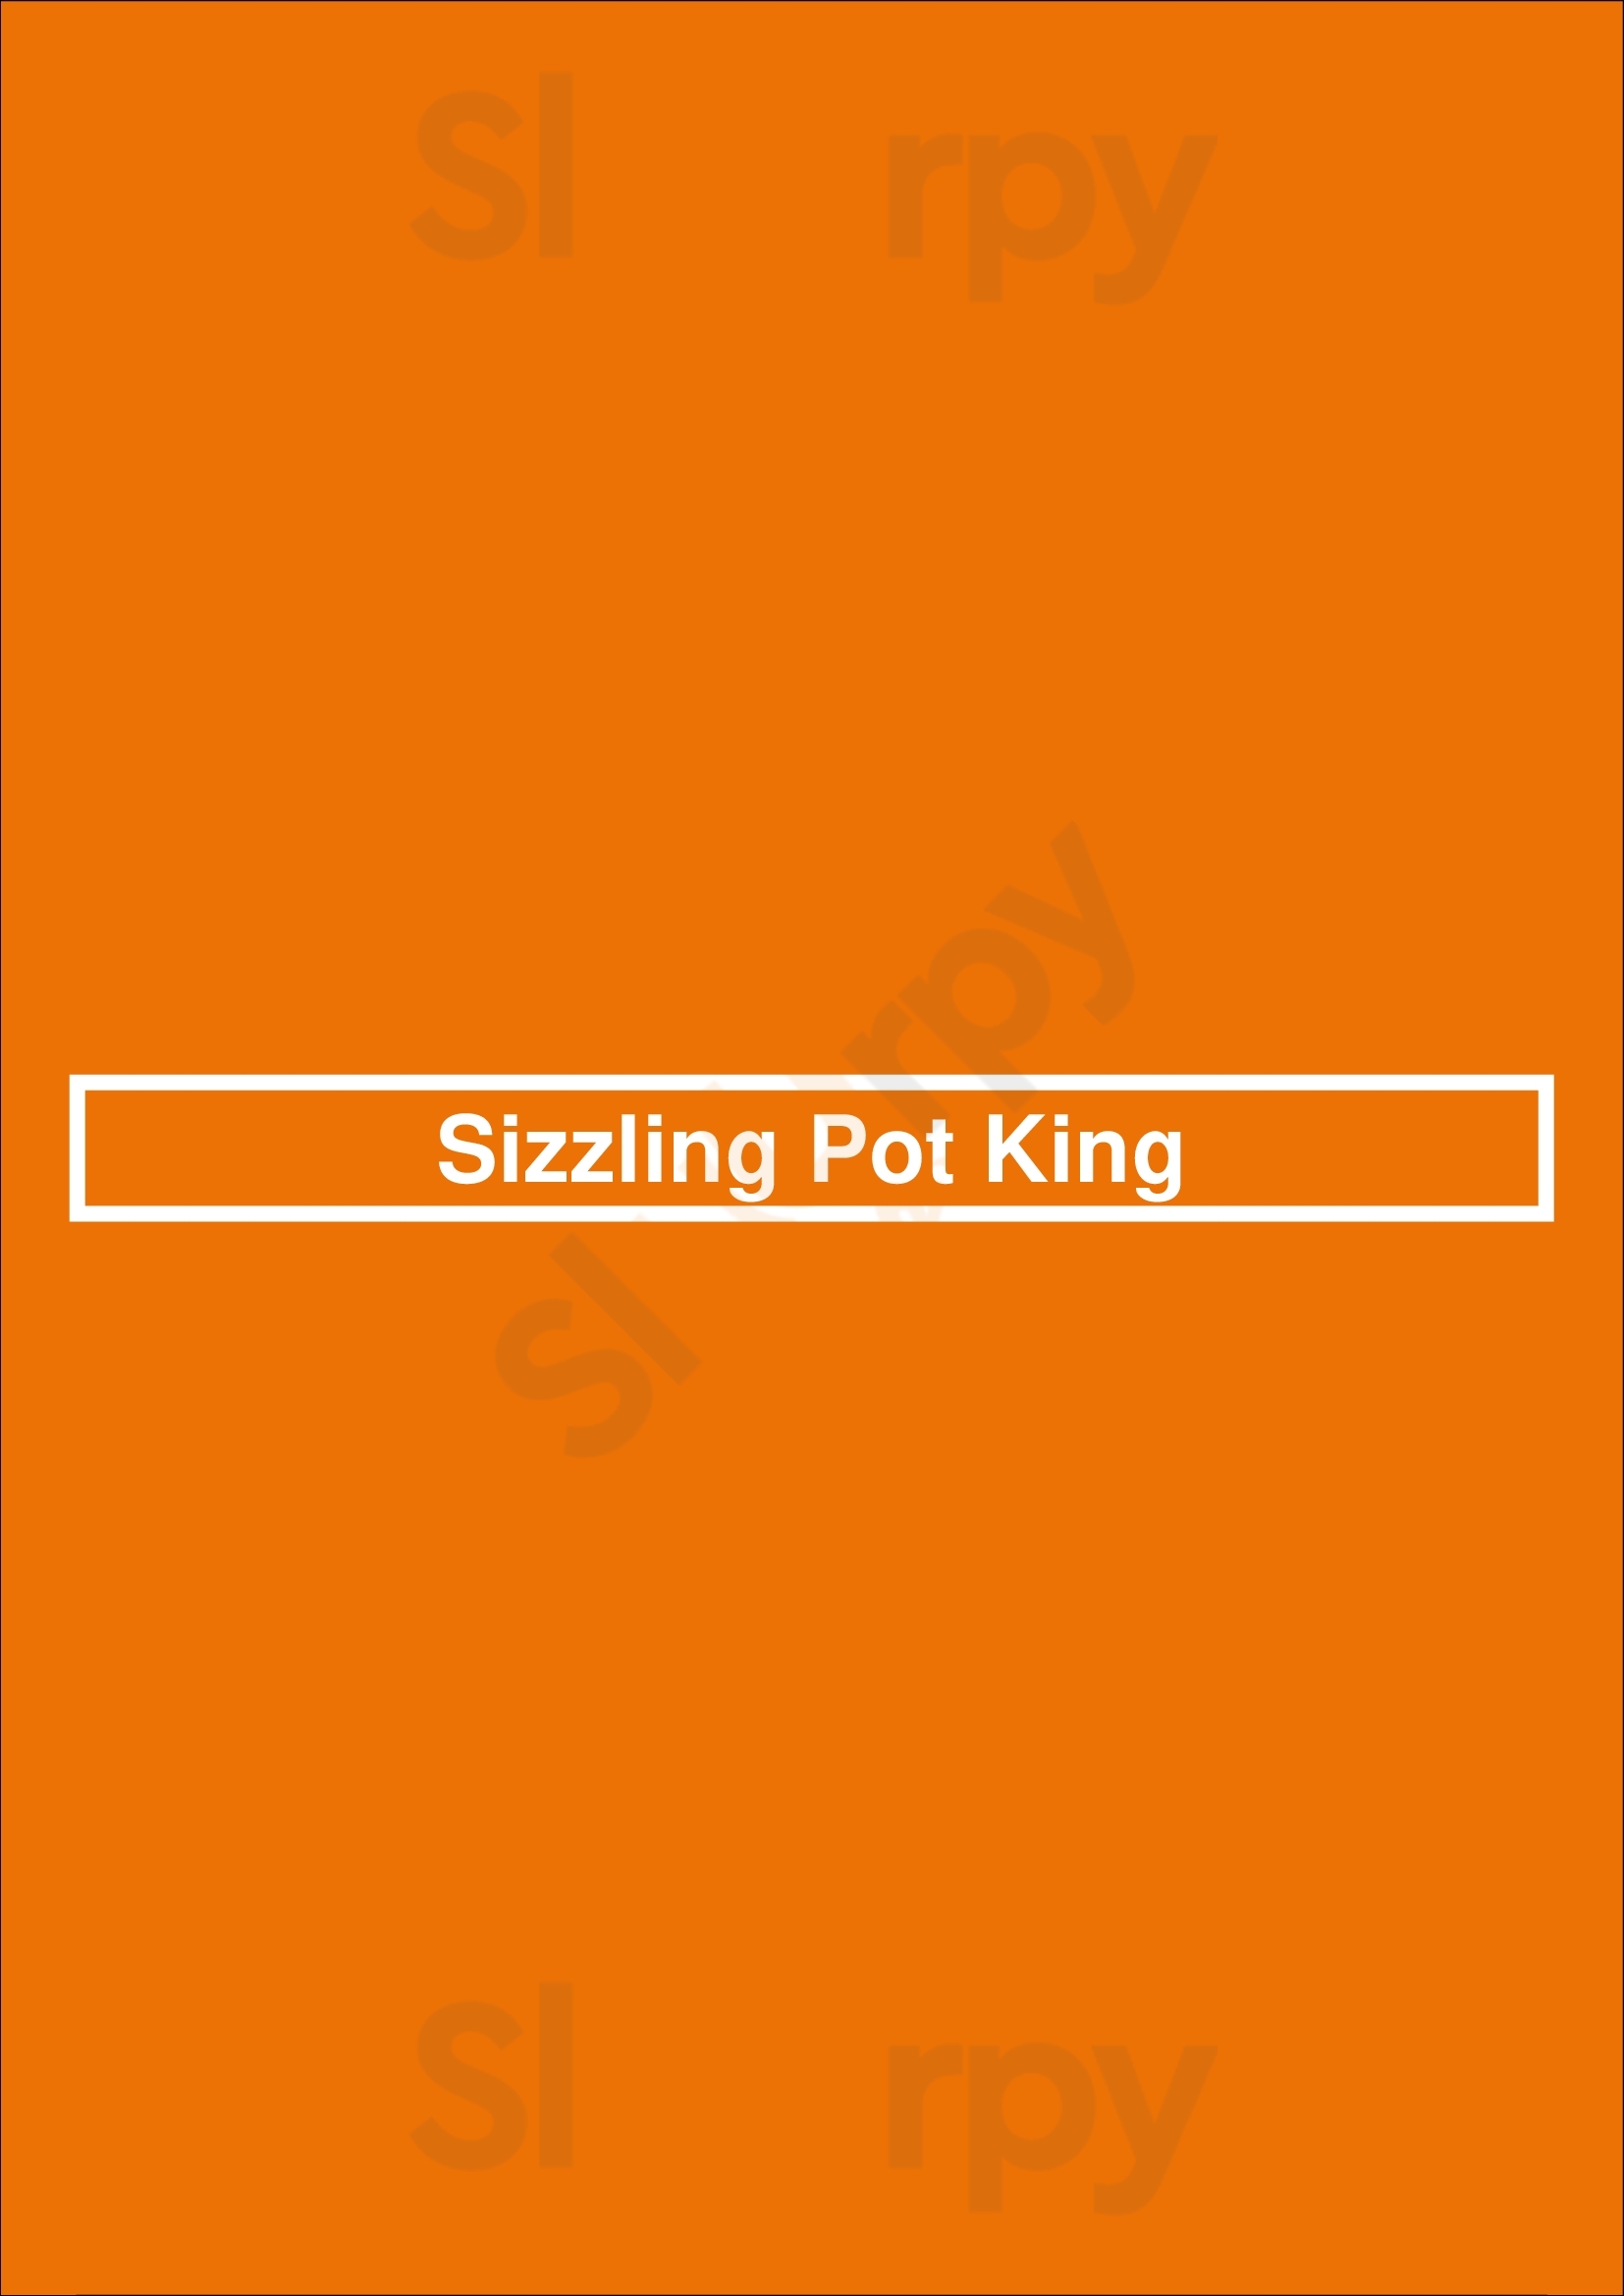 Sizzling Pot King Chicago Menu - 1